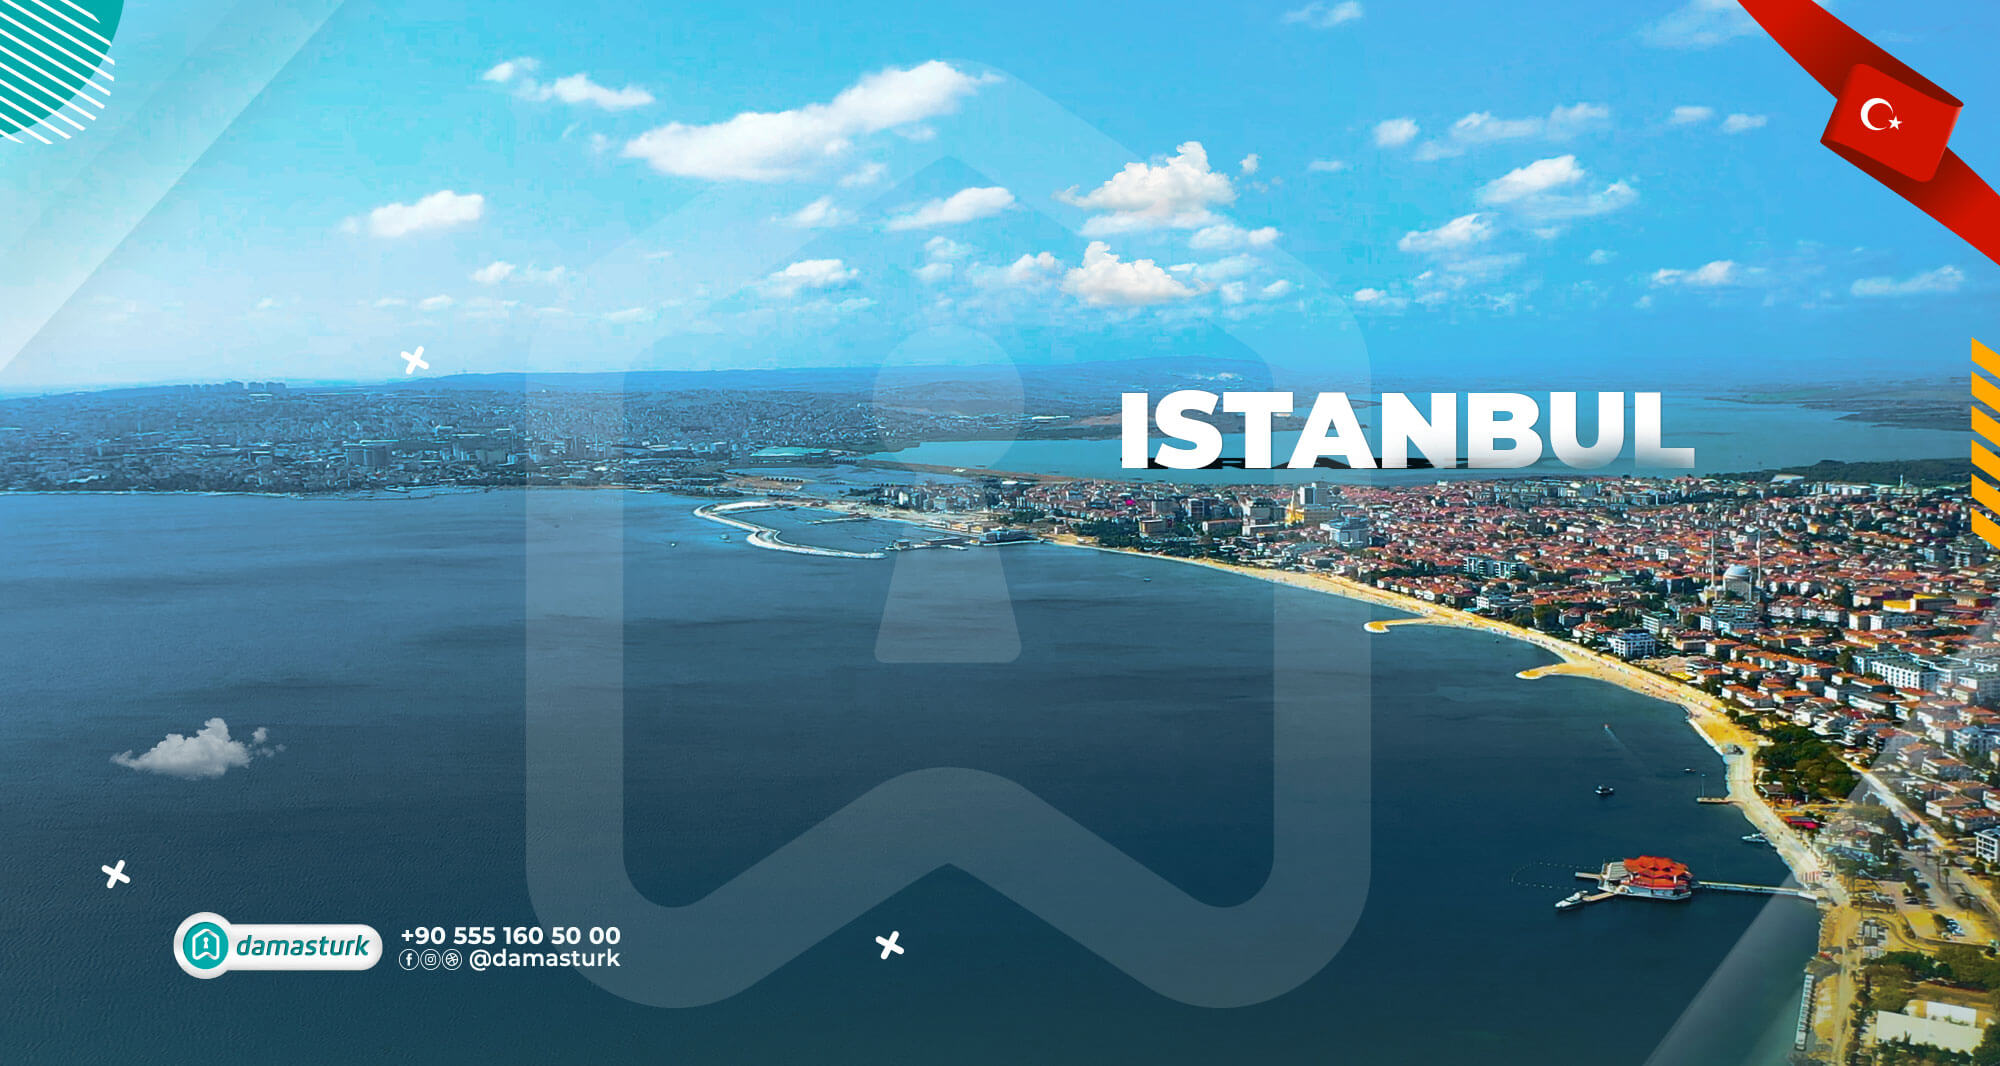 عقارات للبيع في إسطنبول على البحر 2021